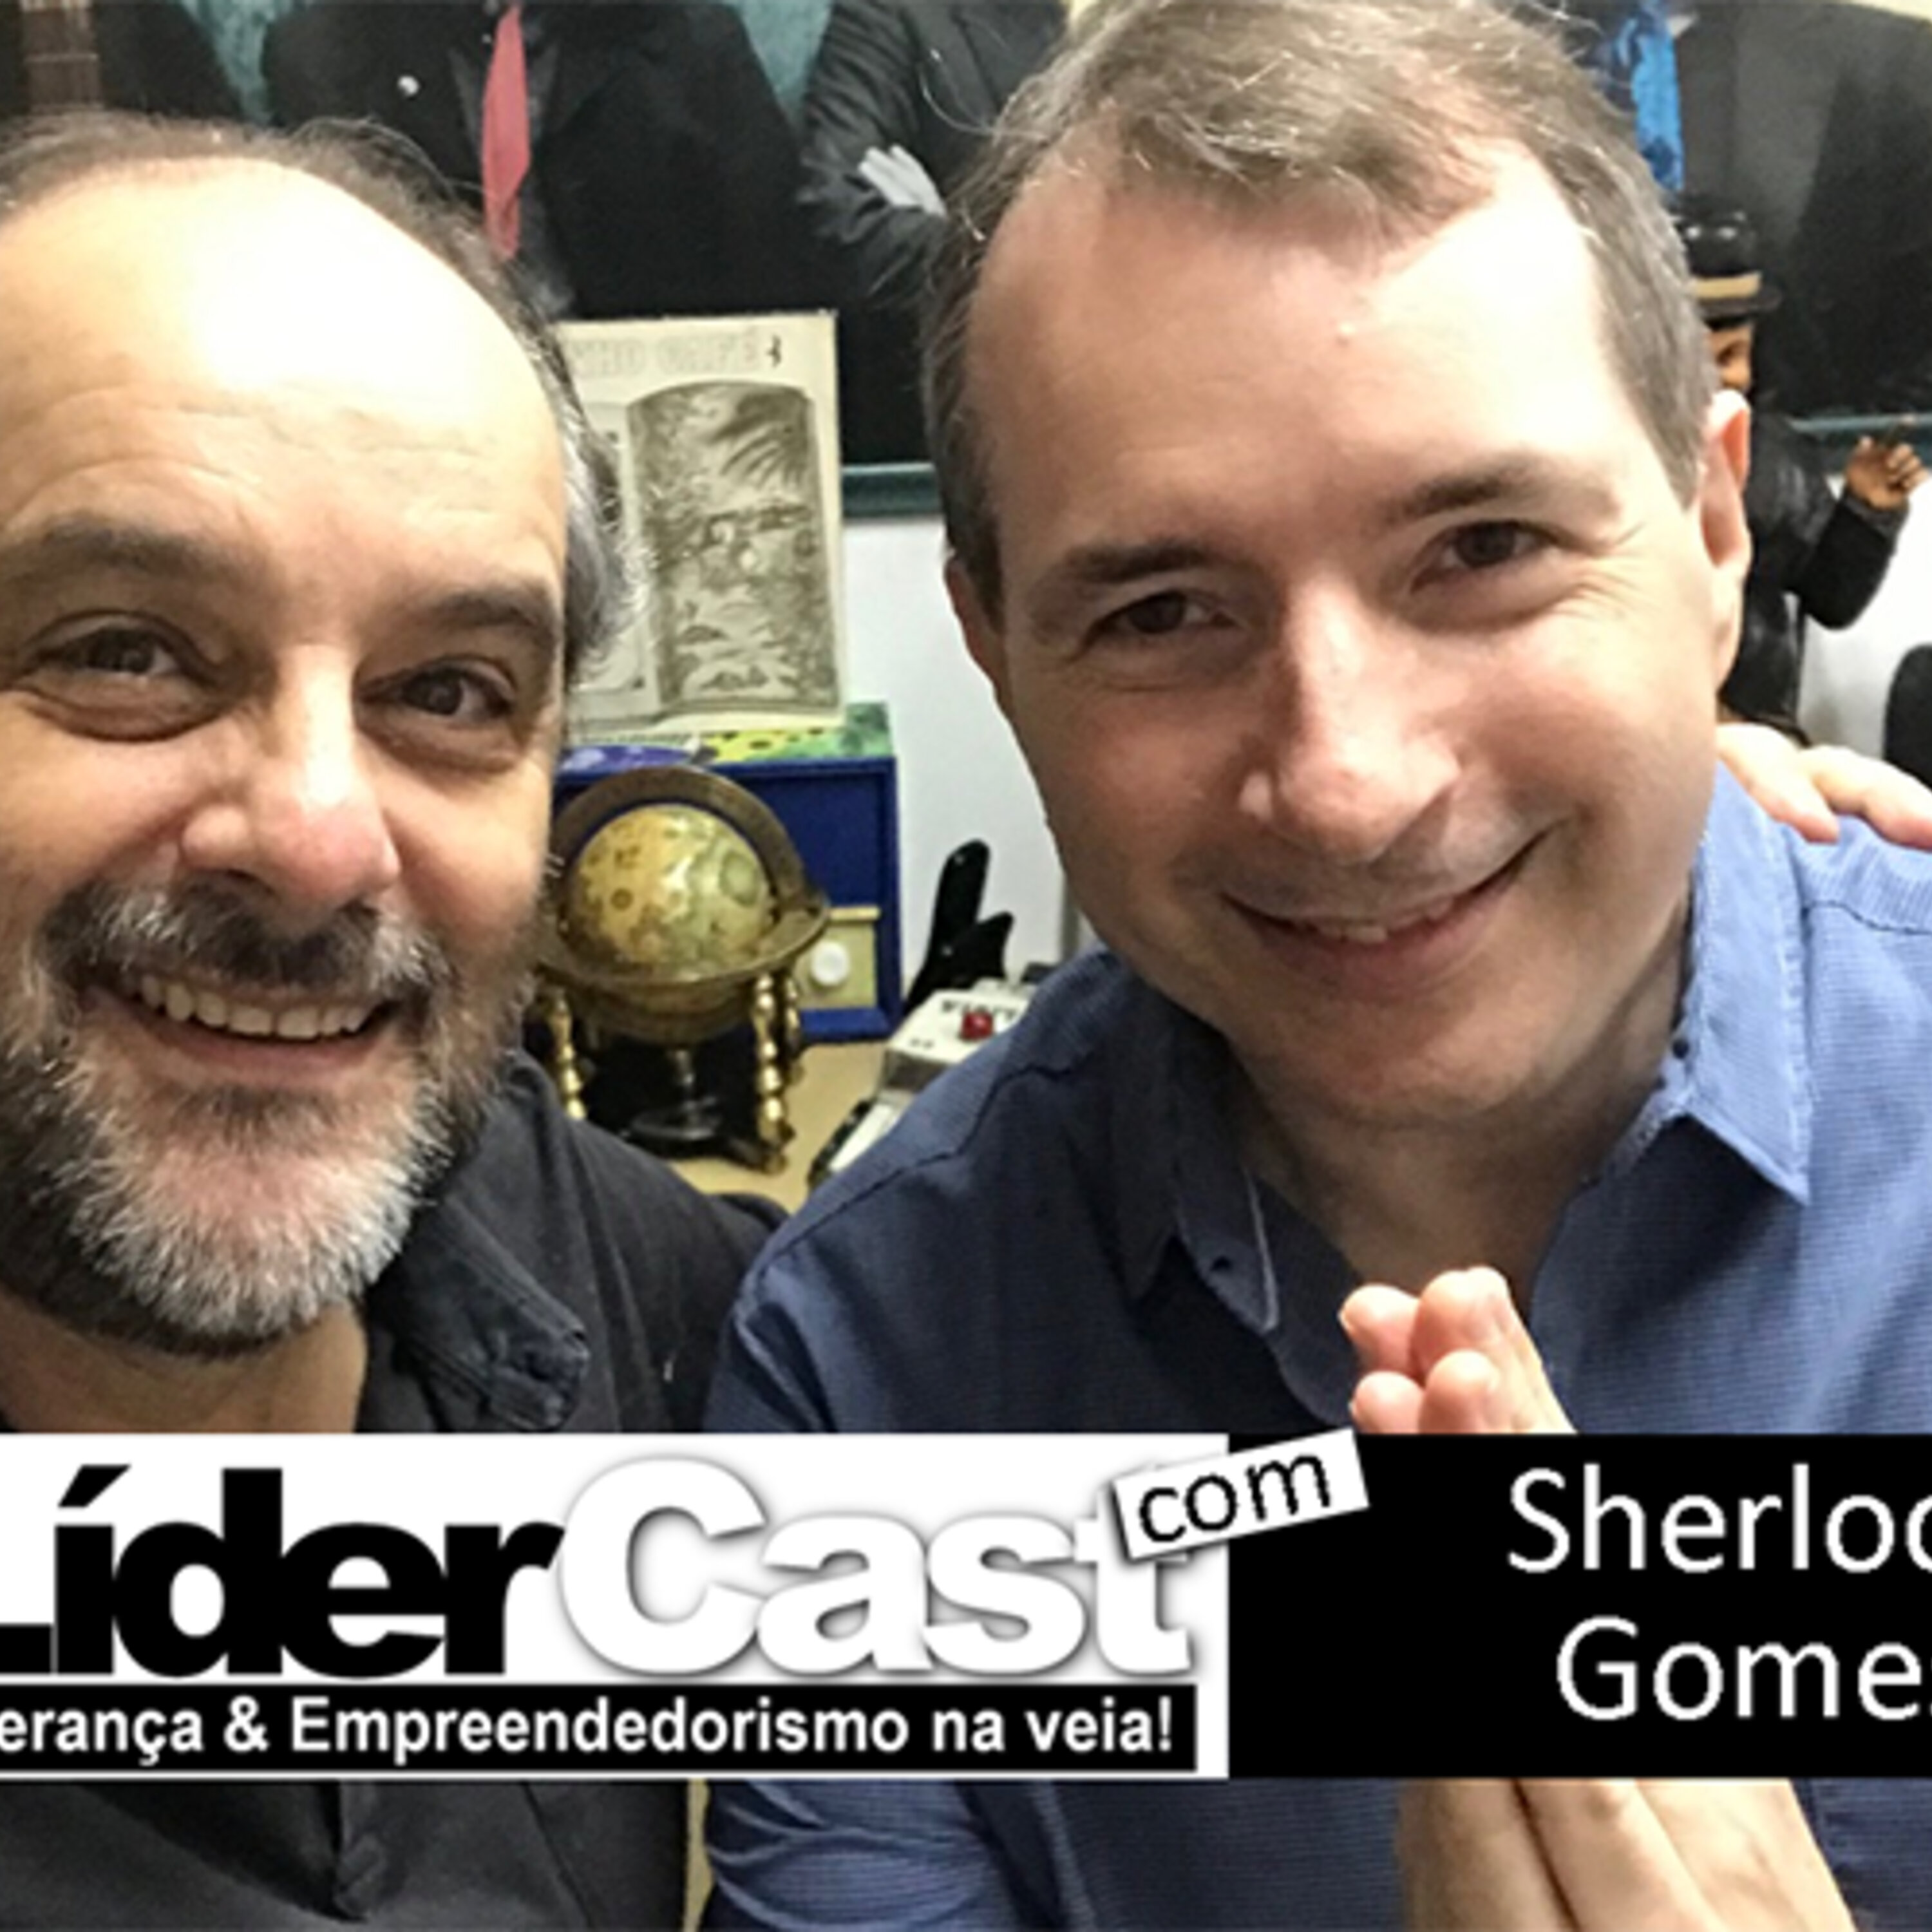 LíderCast 147 – Sherlock Gomes